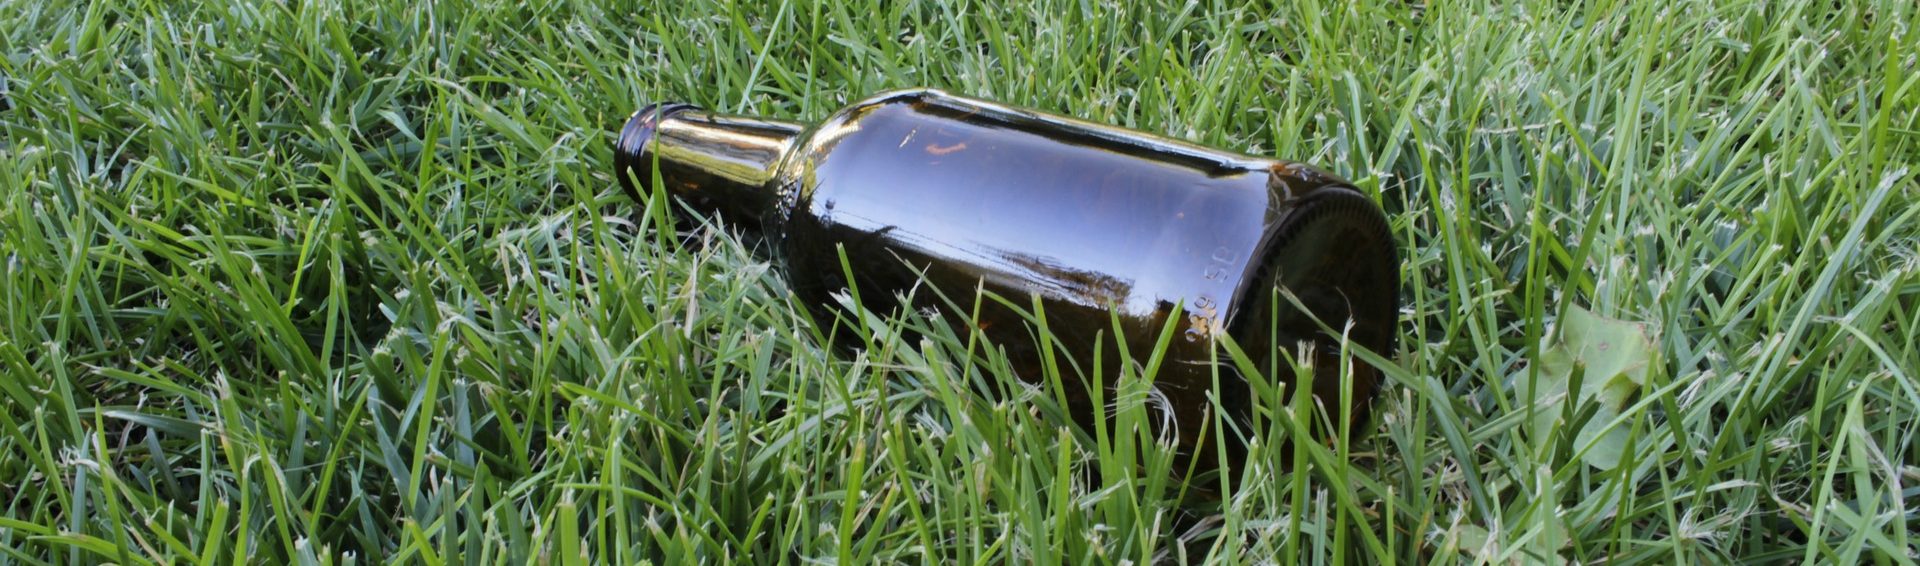 бутылка в траве